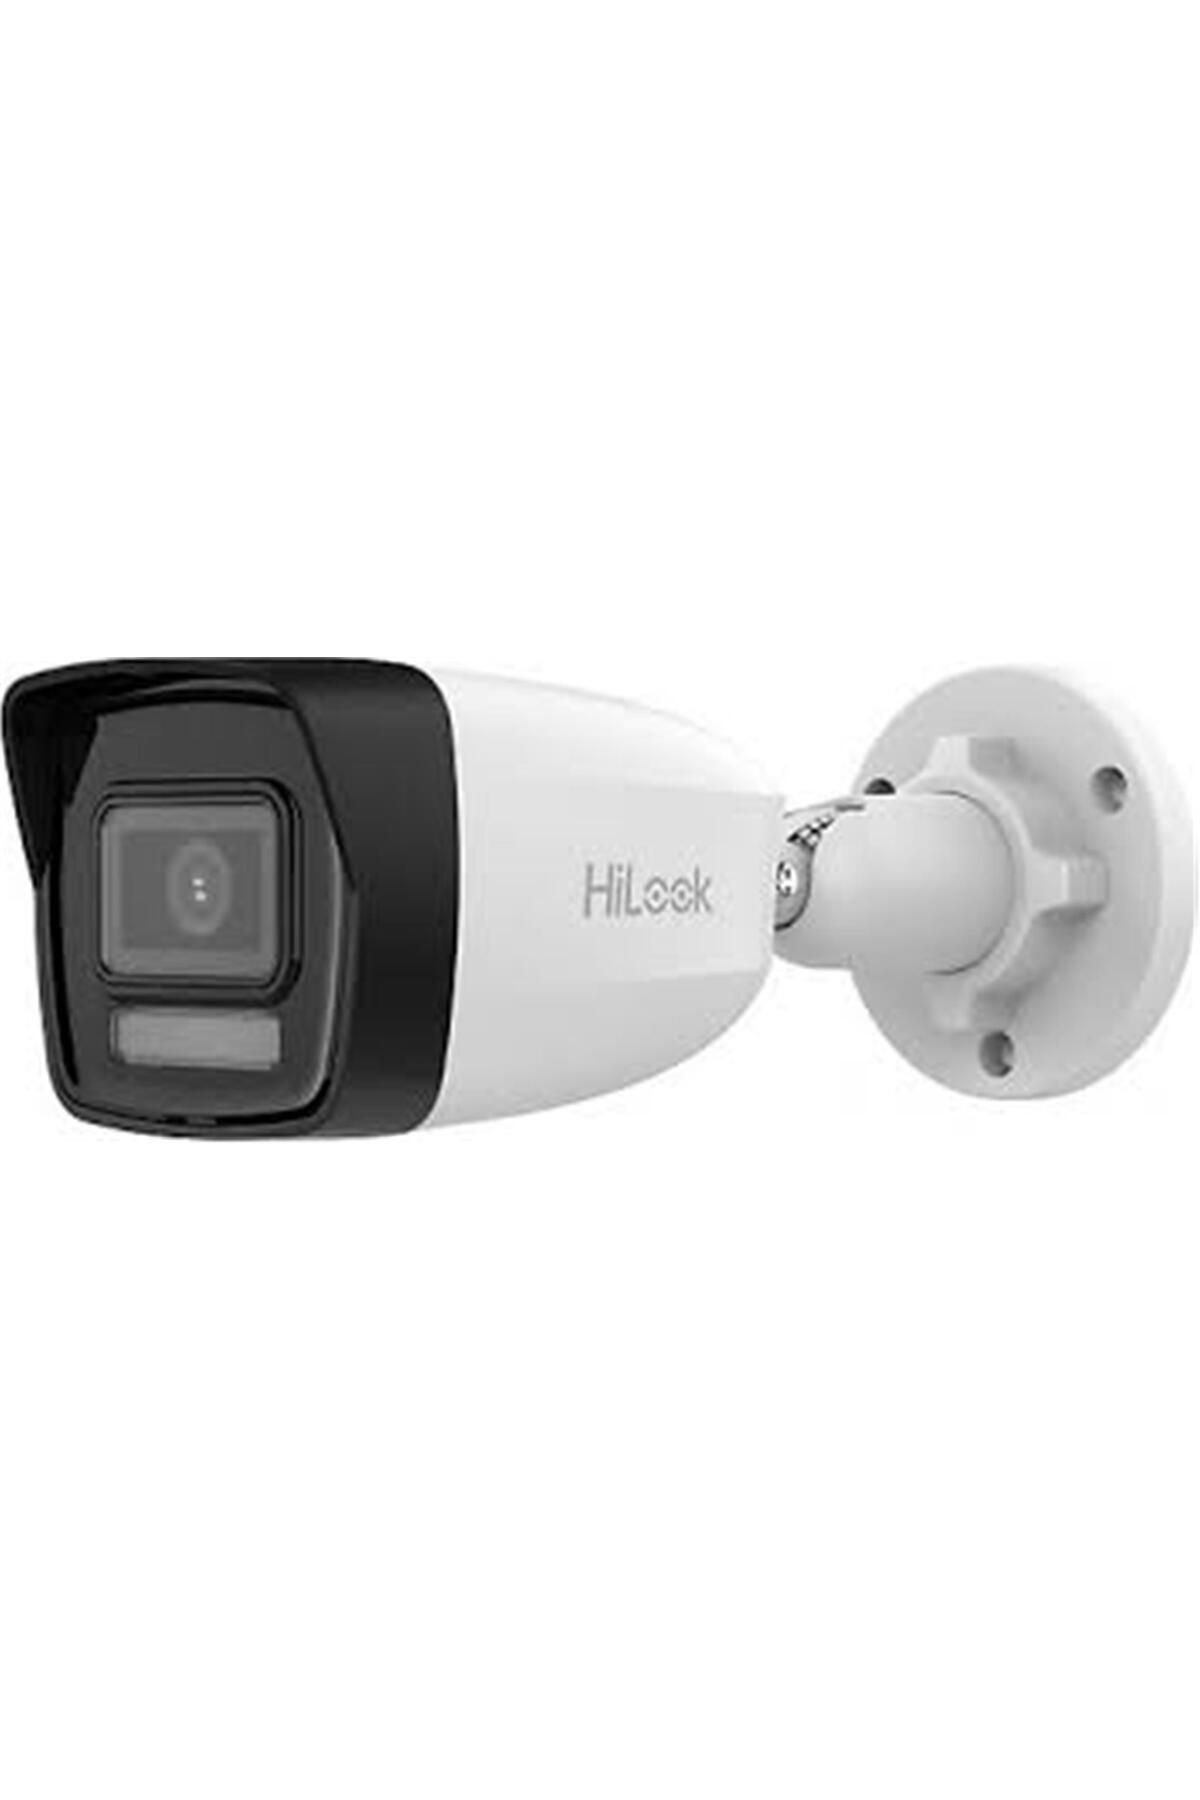 Hilook 2 MP 2.8 mm Mikrofonlu Dual Light IP Kamera Bullet Poe